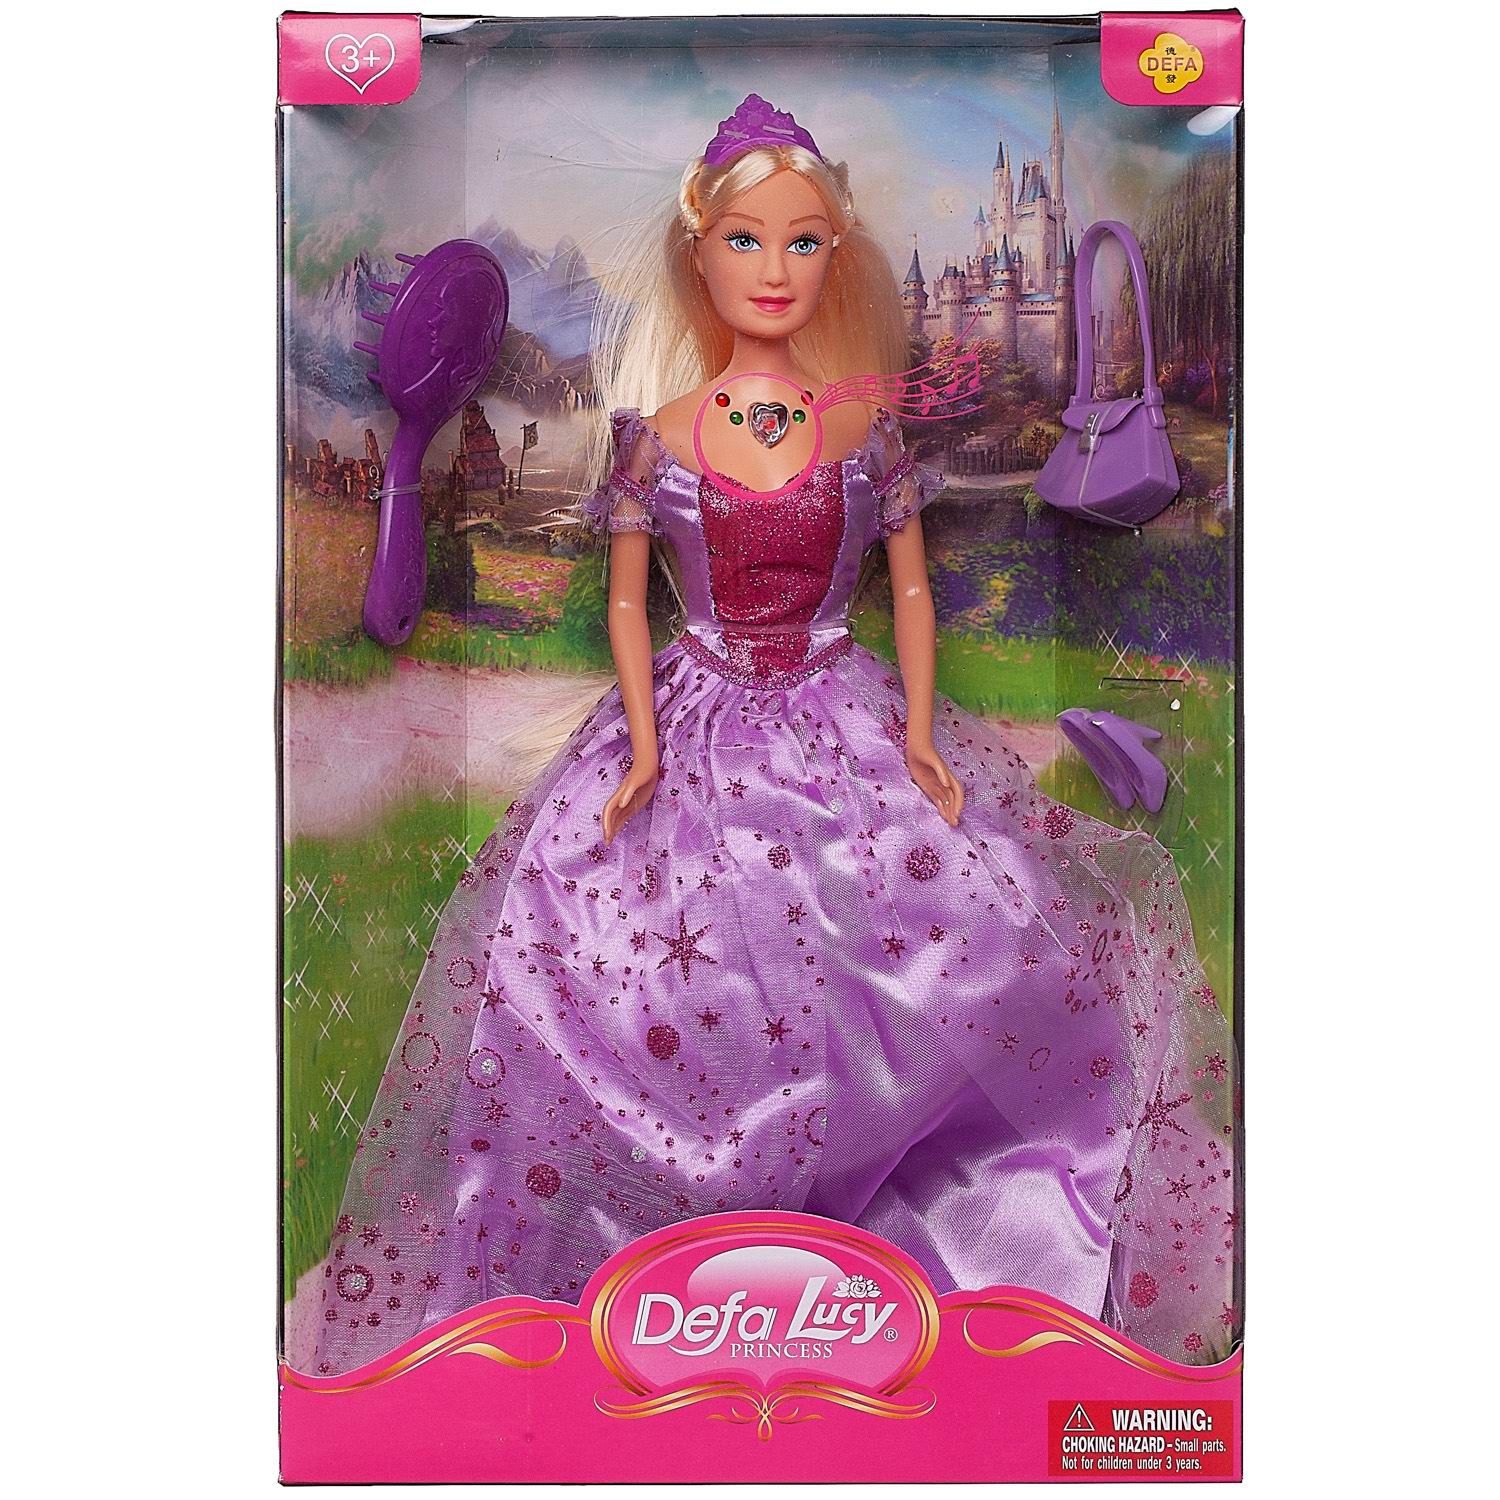 Кукла Defa Lucy Принцесса в фиолетовом платье в наборе с игровыми предметами, 29 см кукла junfa зимняя принцесса в фиолетовом платье 22 см wj 34771